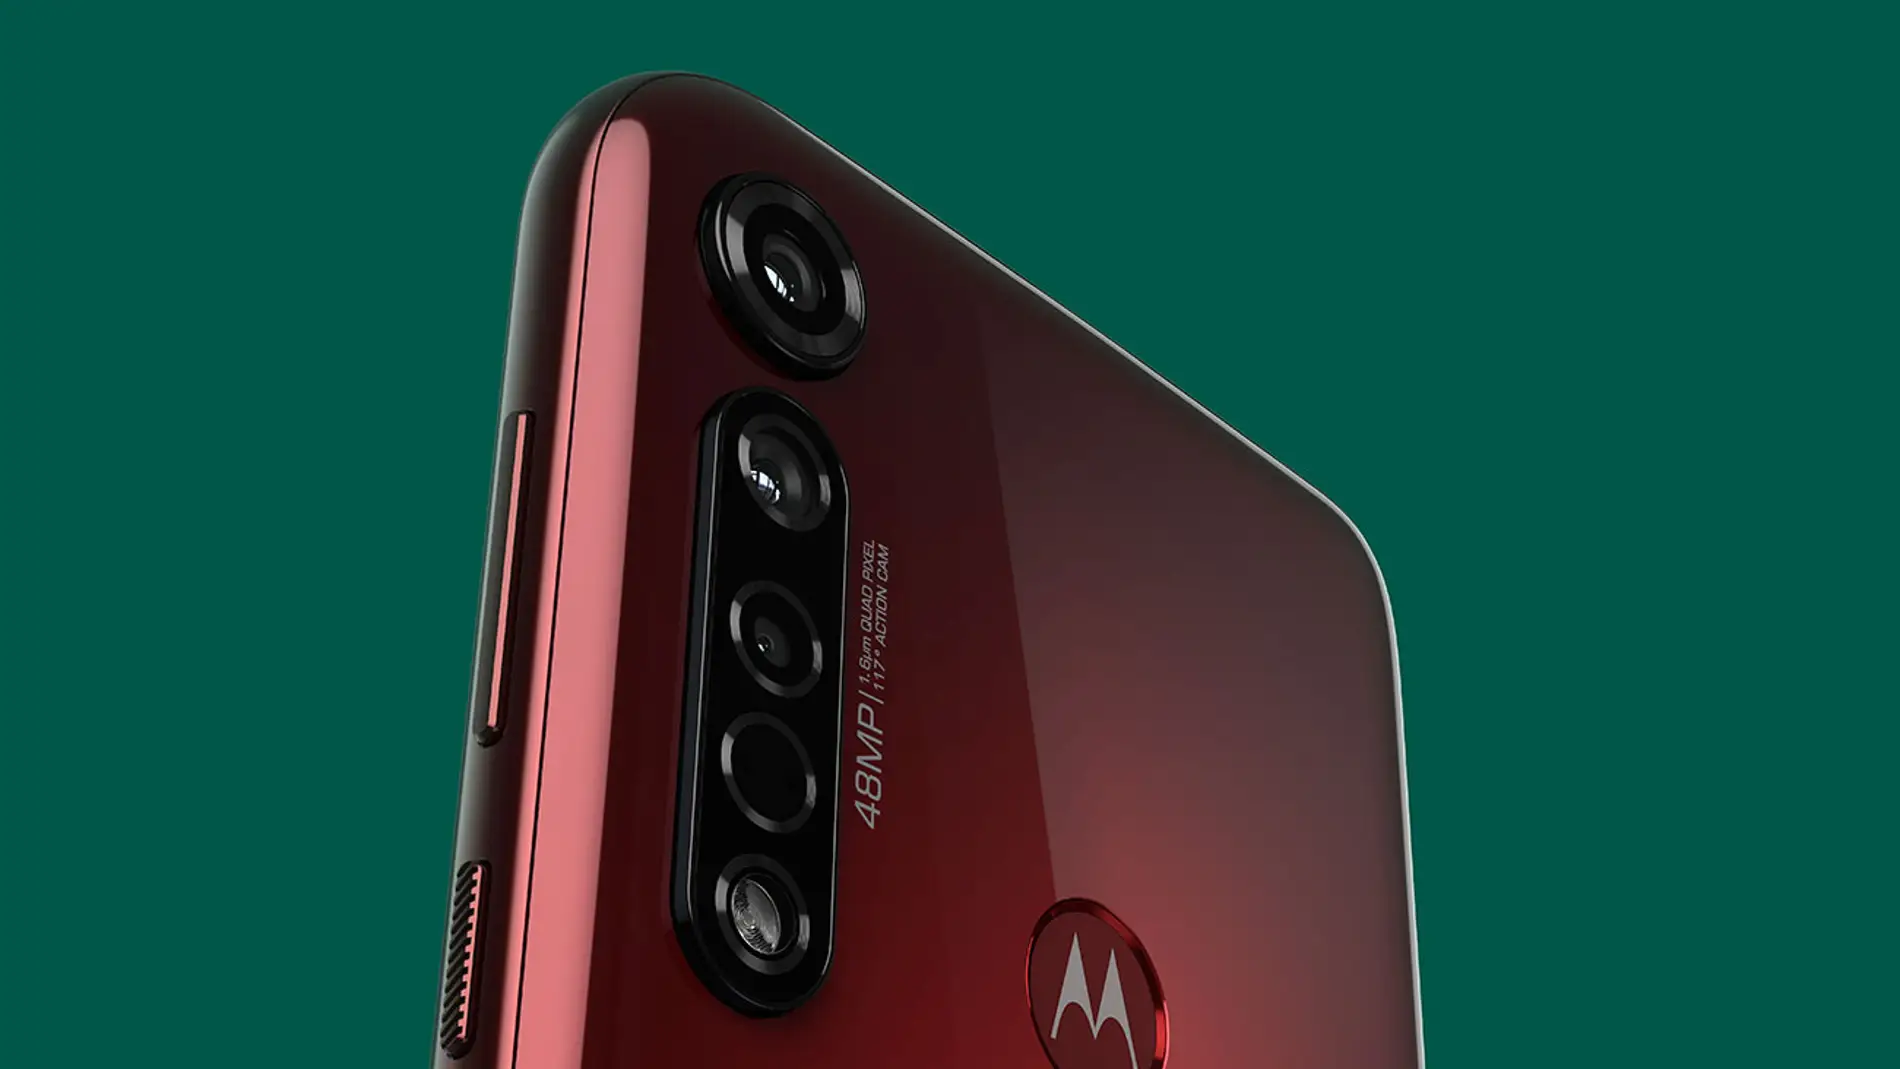 El nuevo Motorola Moto G8 Plus estrena cámara de 48MP y una gran autonomía